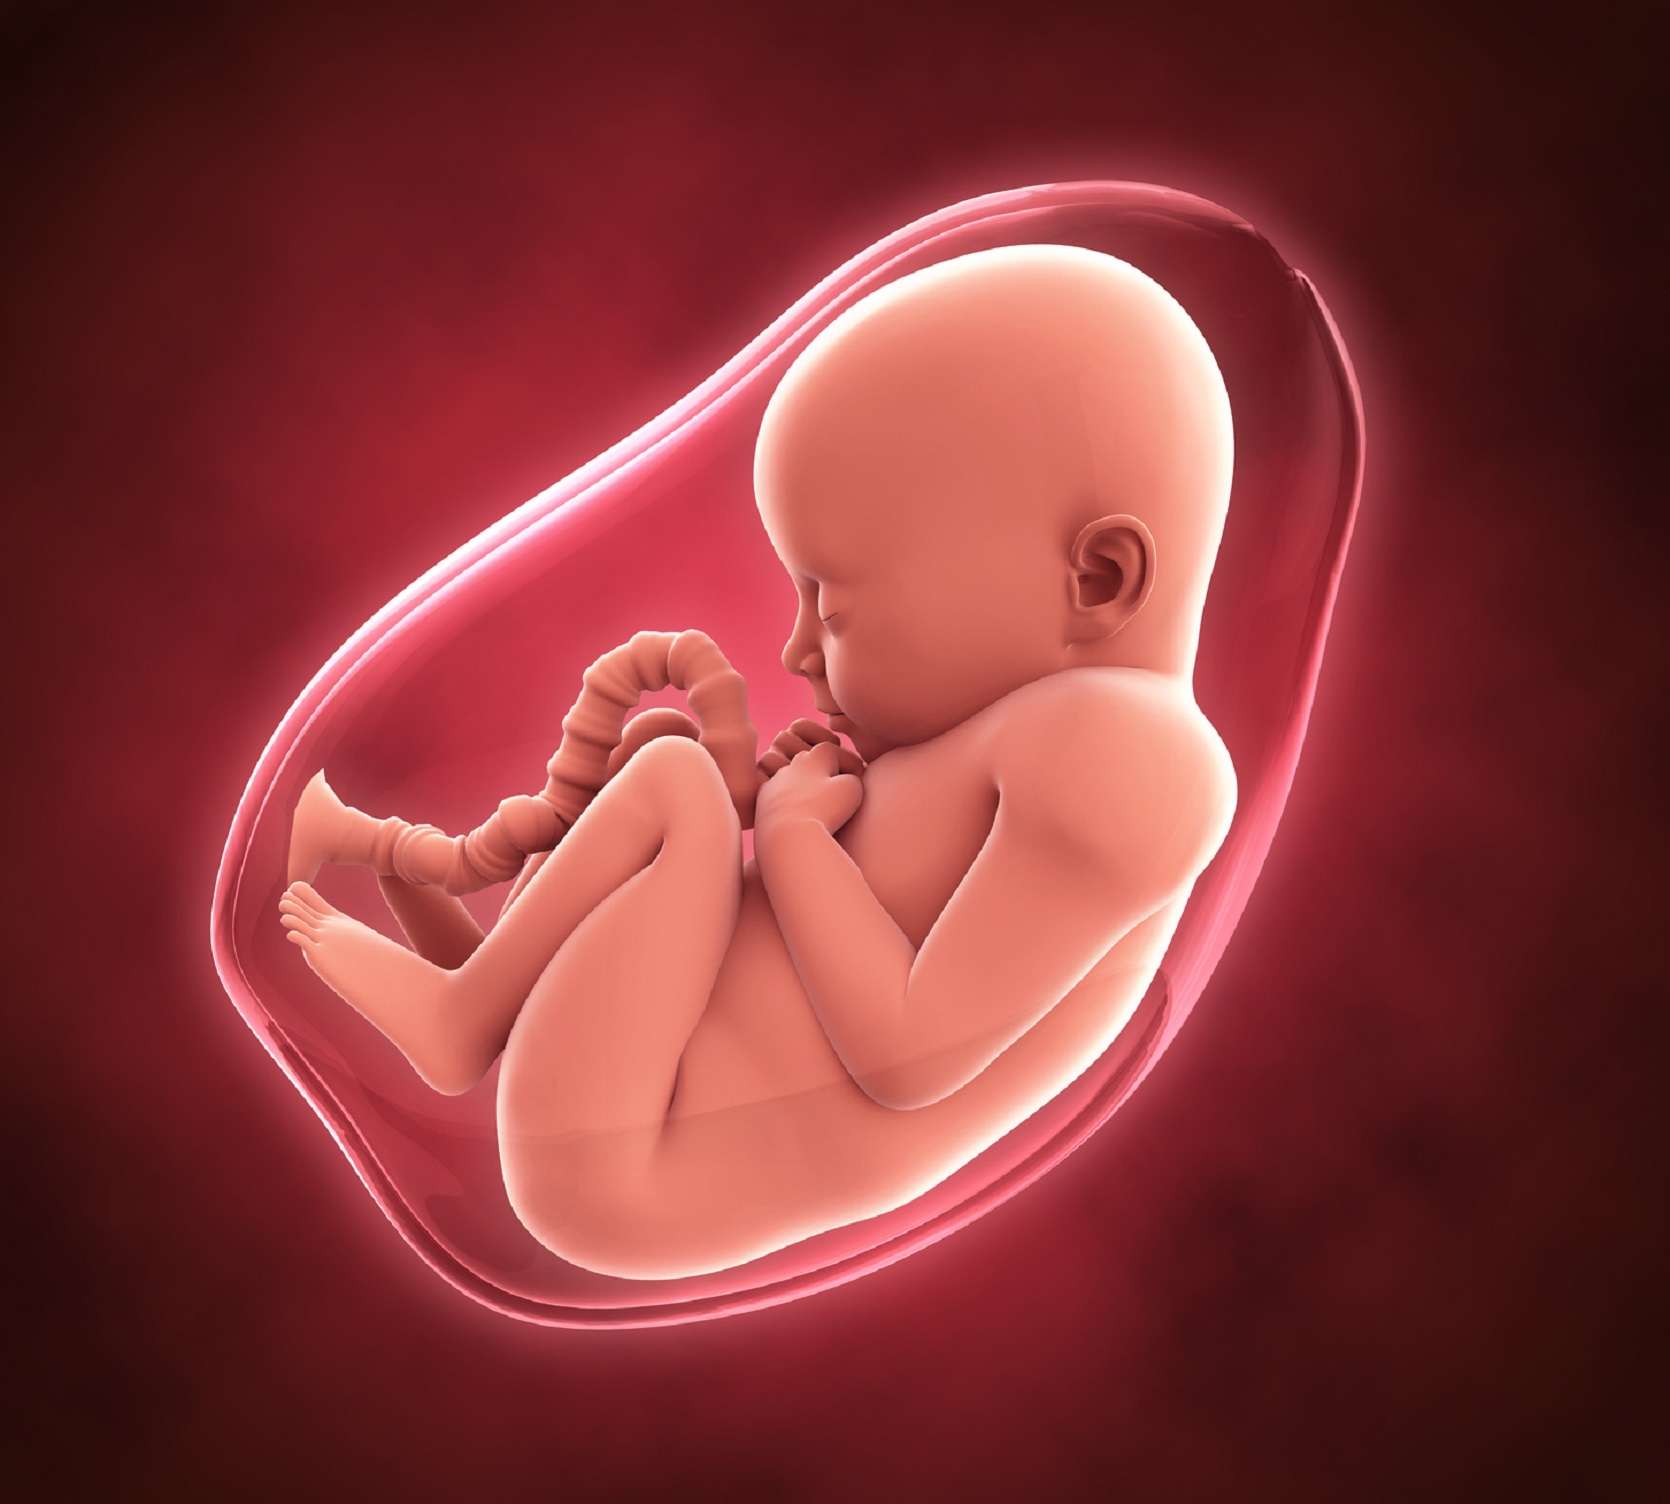 Définition | Fœtus - Foetus